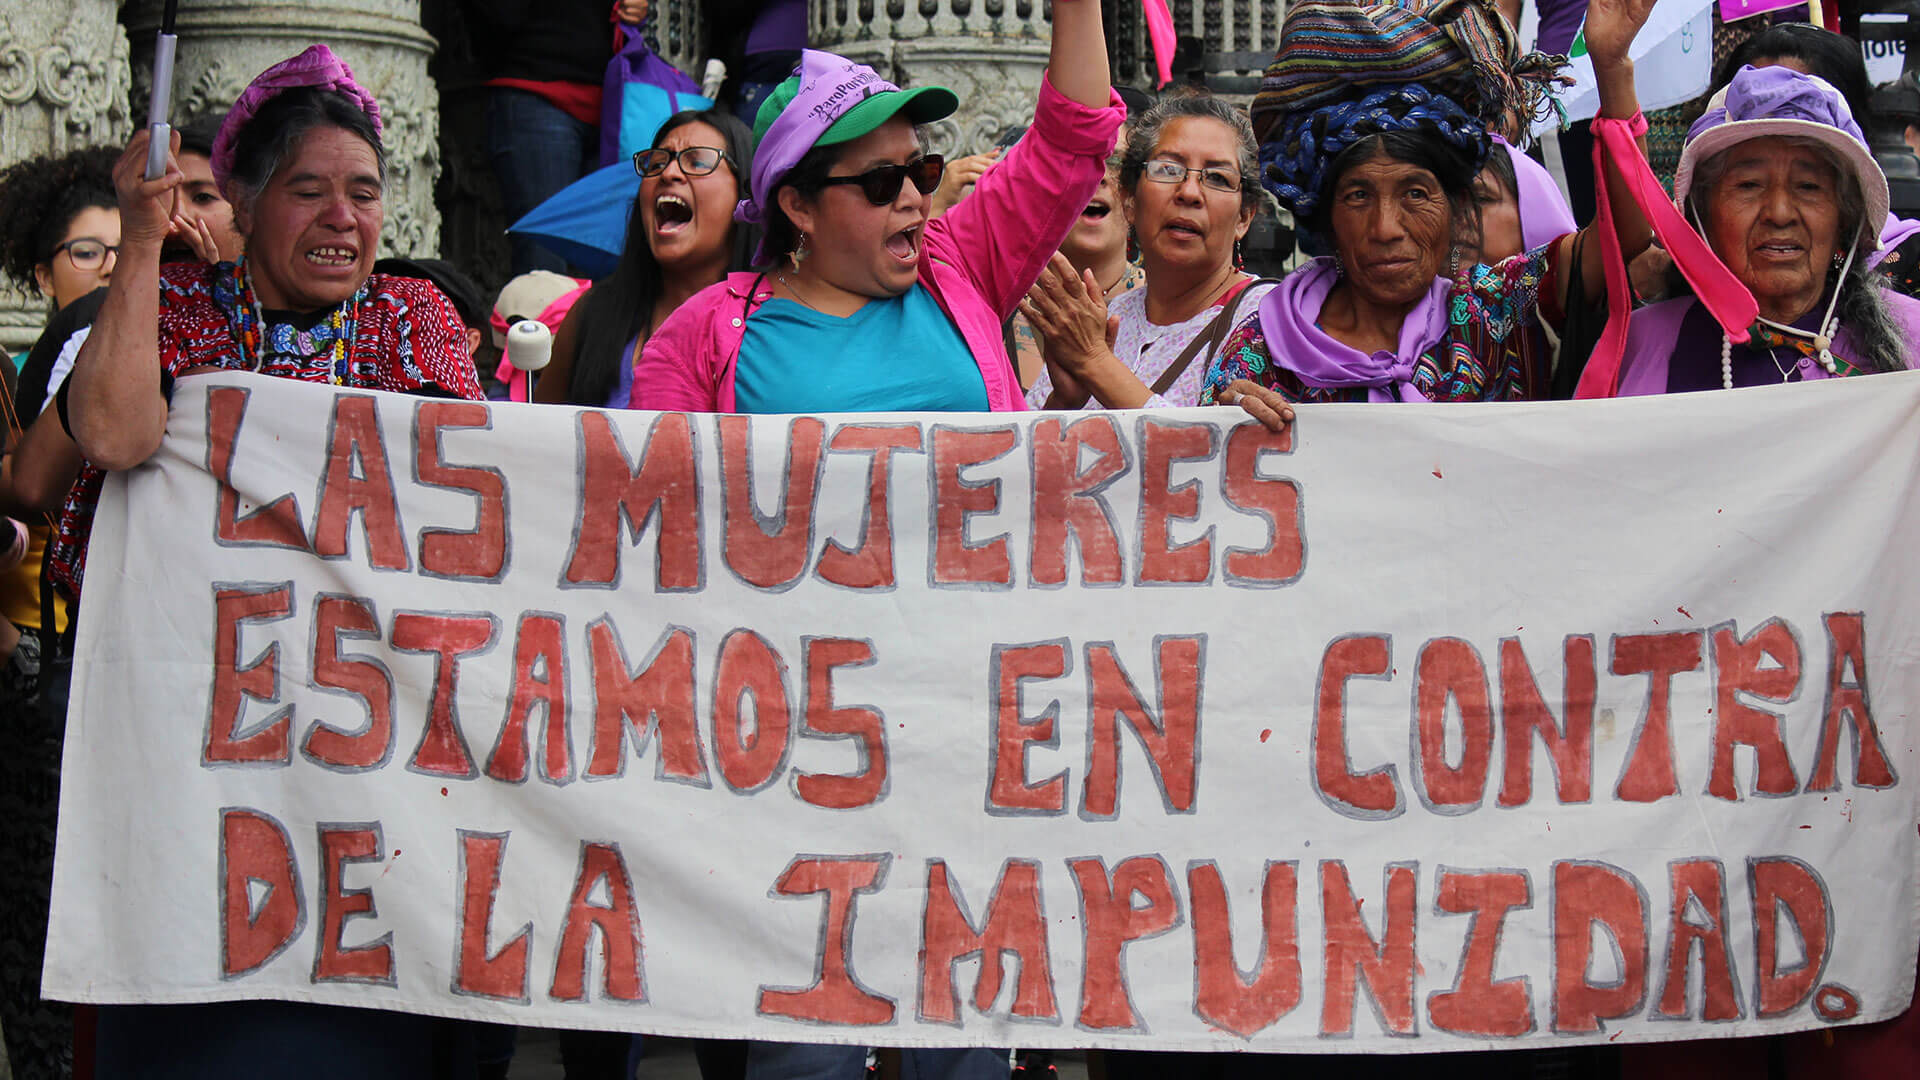 Demonstrierende halten ein Banner mit der Aufschrift "Las mujeres estamos en contra de la impunidad."